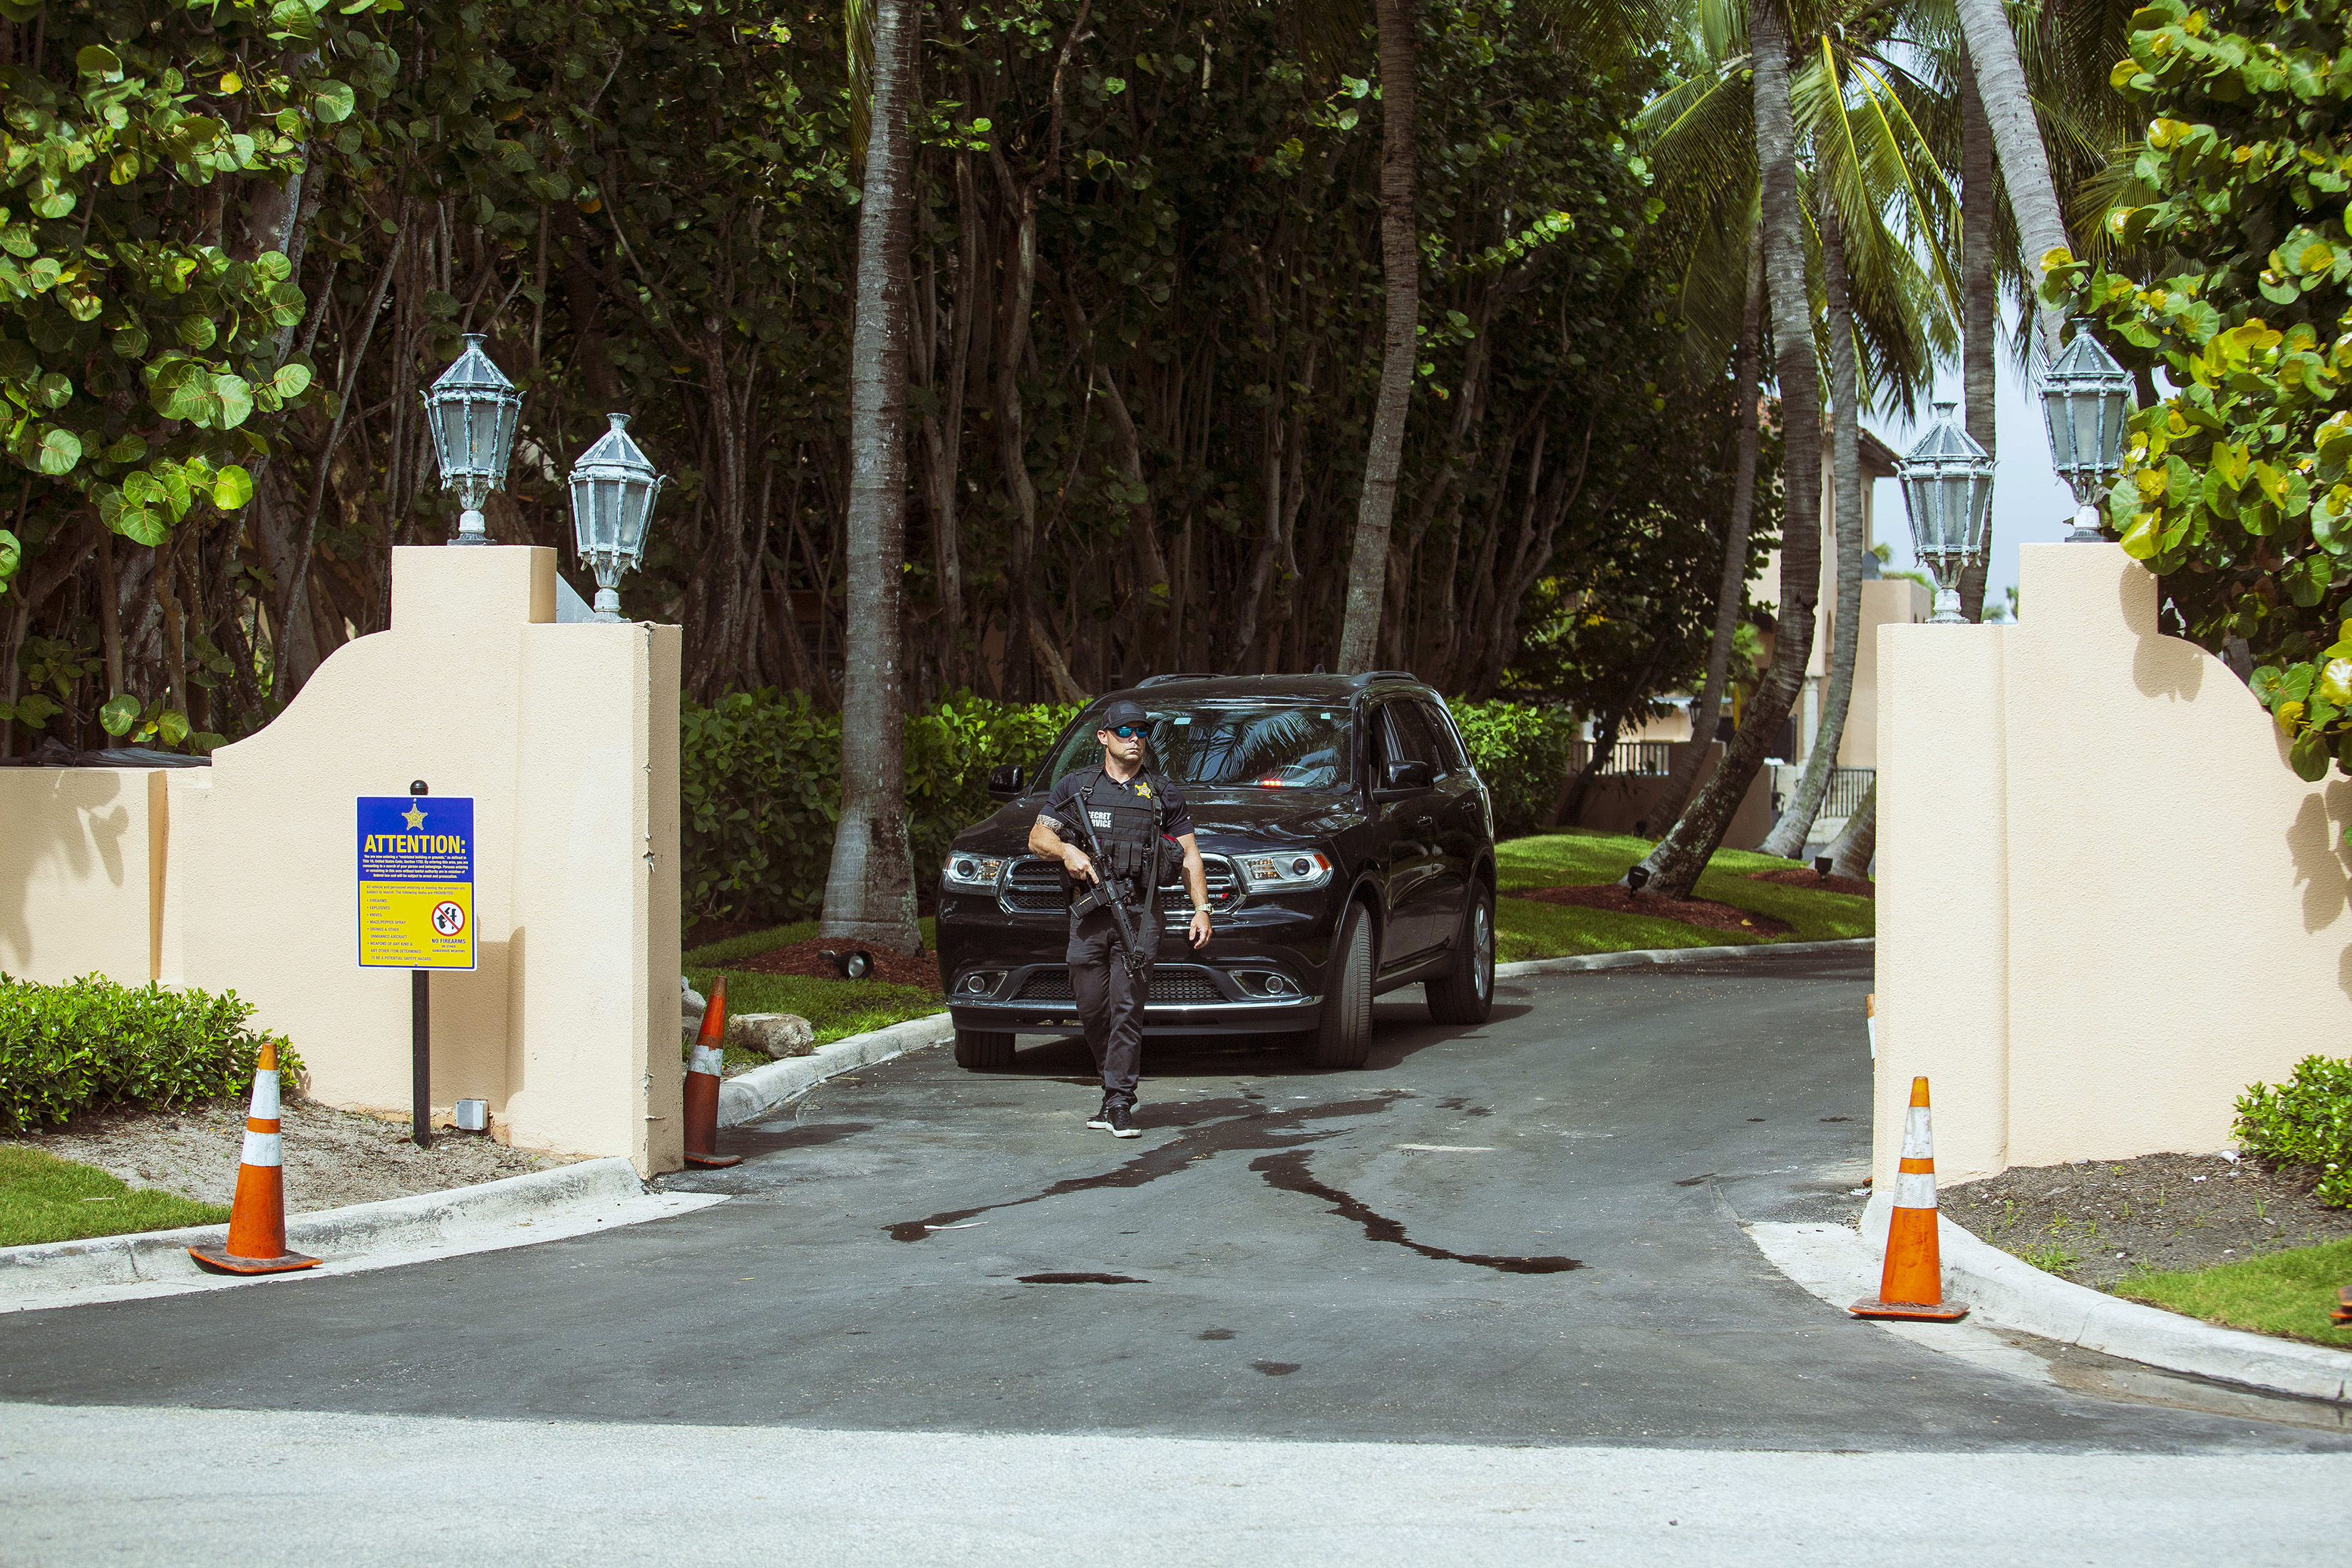 Un agente del Servicio Secreto vigila una de las entradas de la residencia Mar-a-Lago del expresidente Trump en Palm Beach, Florida, el 9 de agosto de 2022. (Foto Prensa Libre: Saúl Martínez/The New York Times)